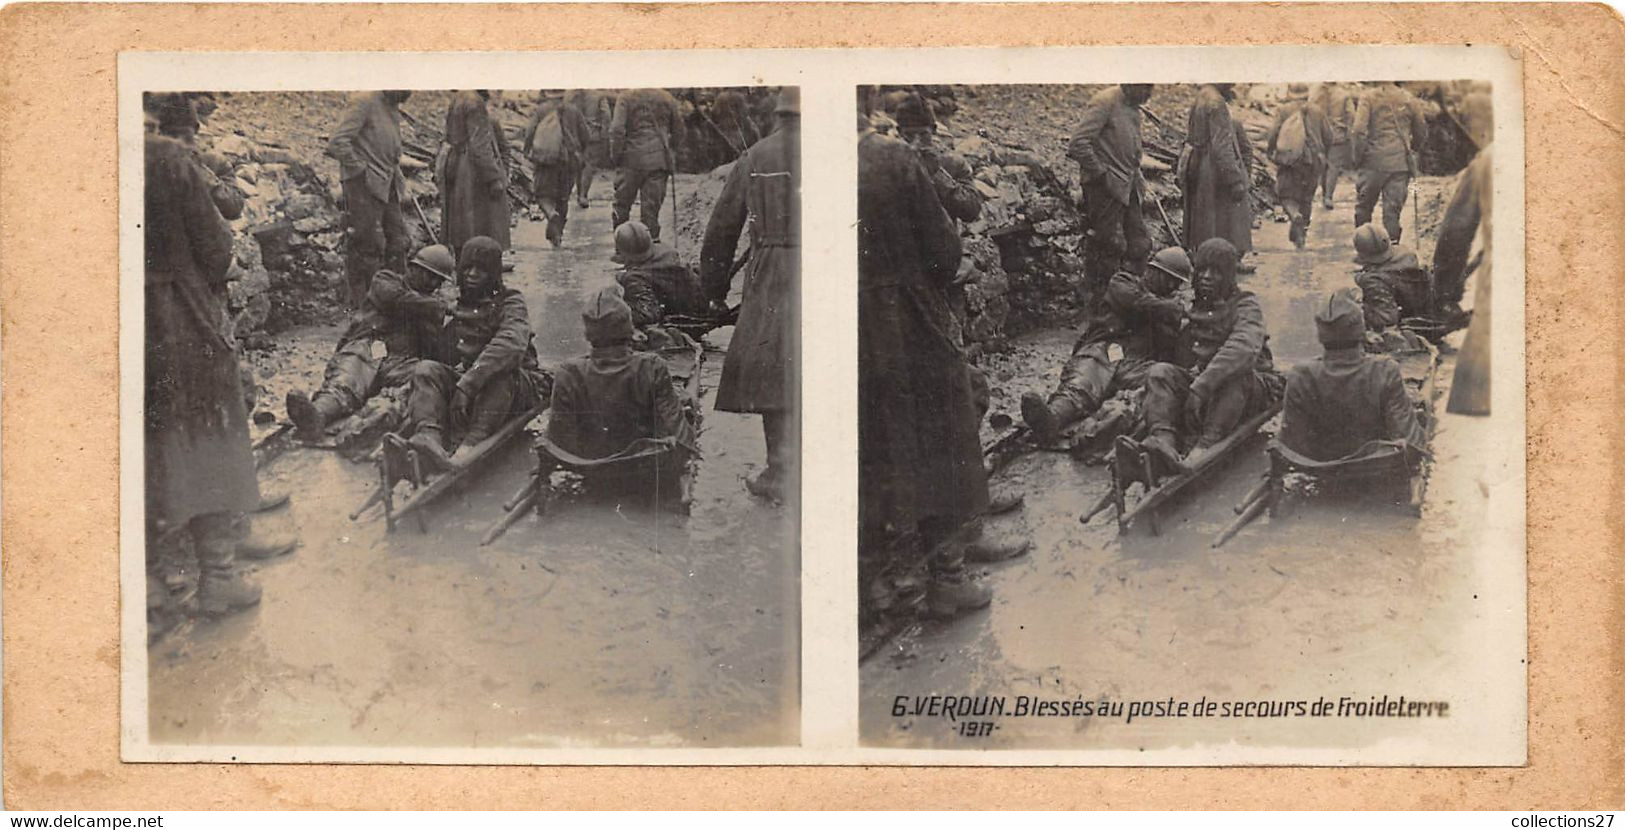 55-VERDUN- 1917 BLESSES AU POSTE DE SECOURS DE FROIDETERRE - Stereoscopic